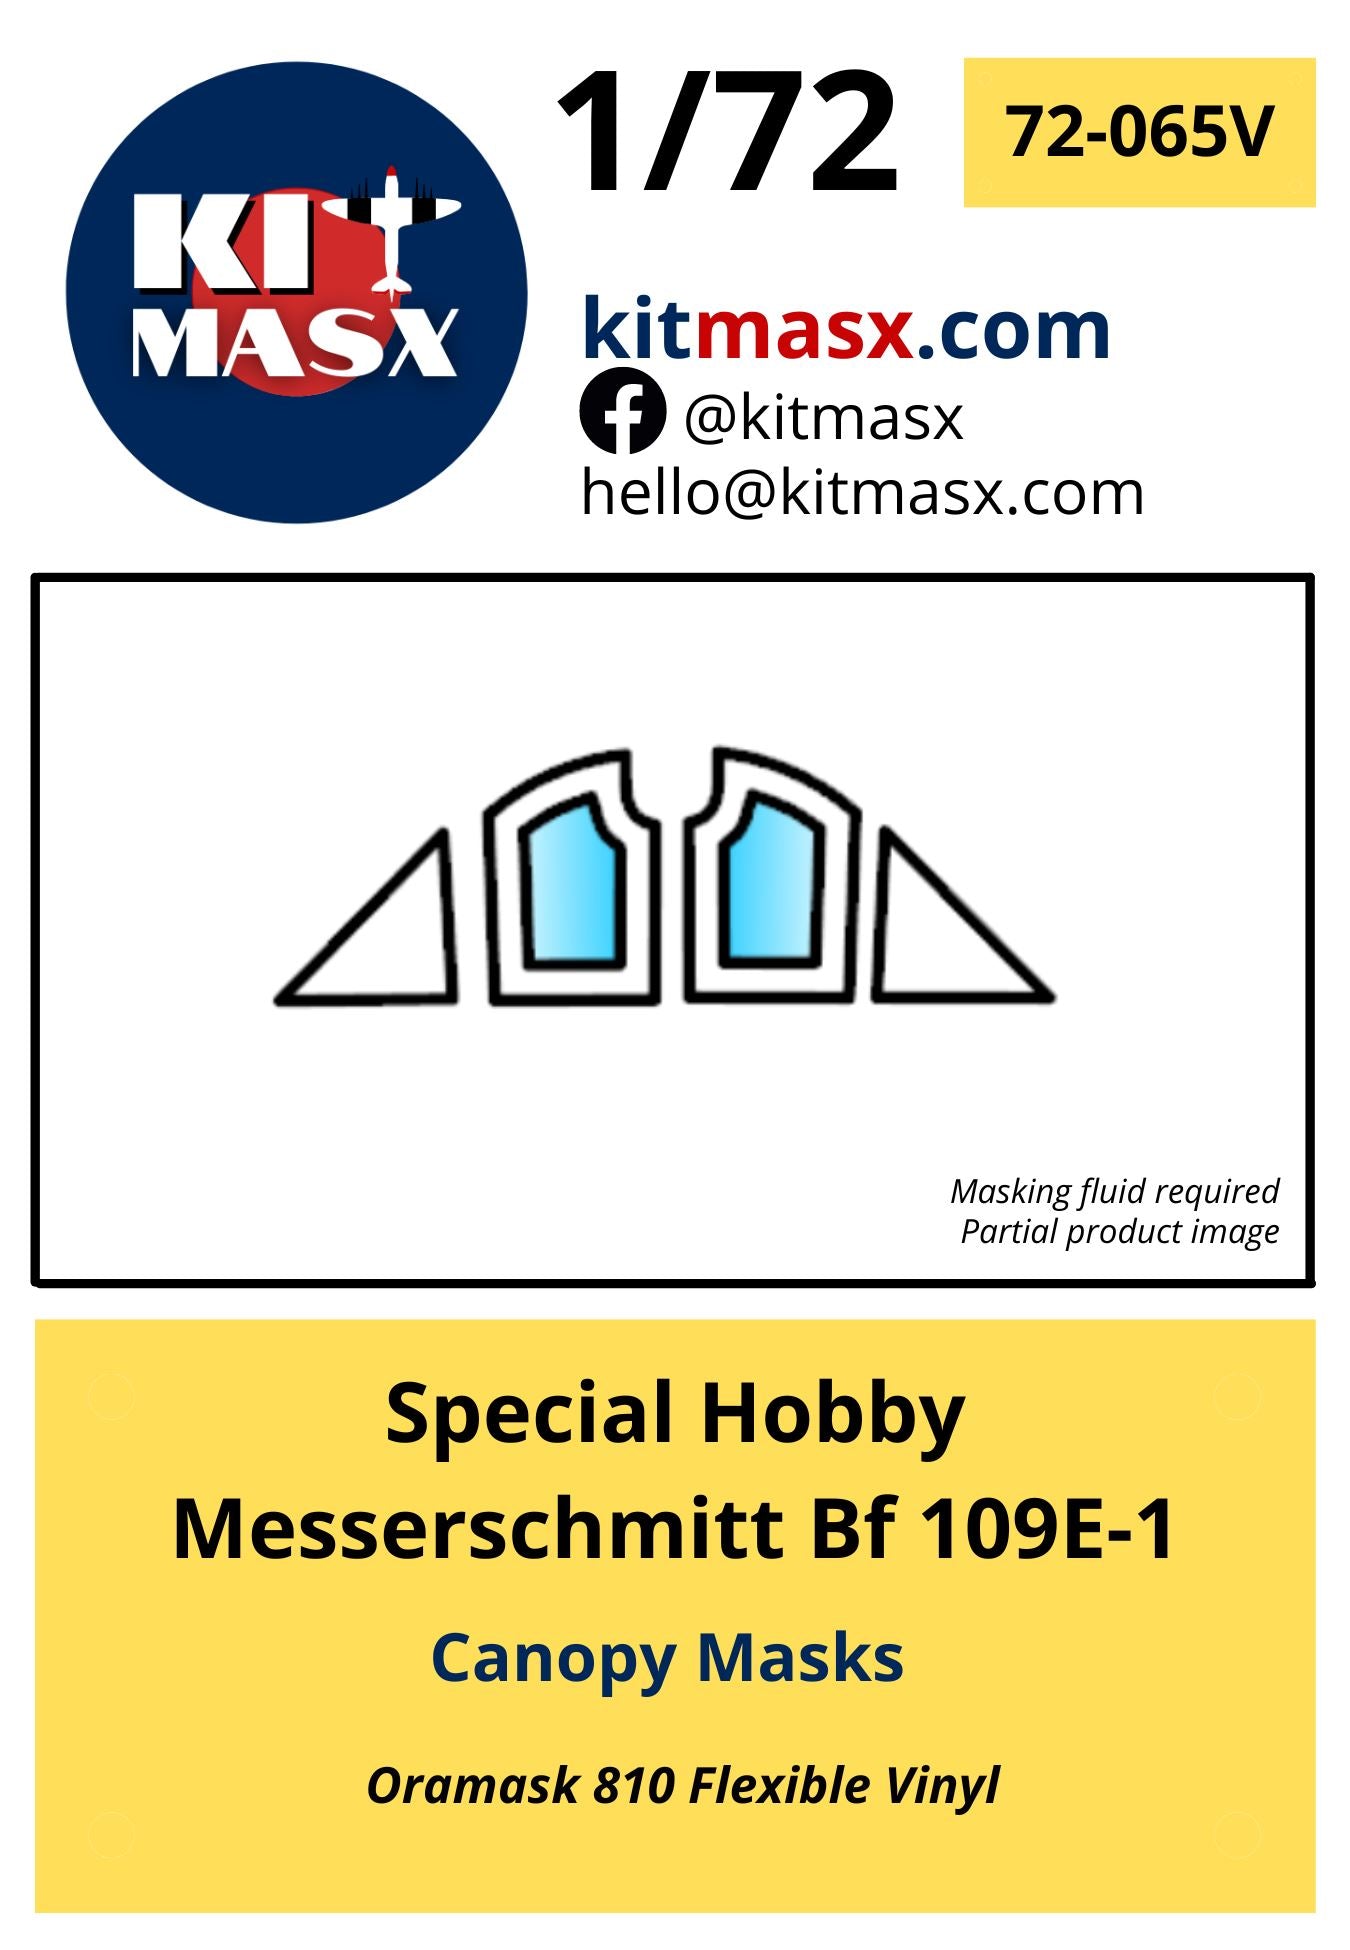 Special Hobby Messerschmitt Bf 109E-1 Canopy Masks Kit Masx 